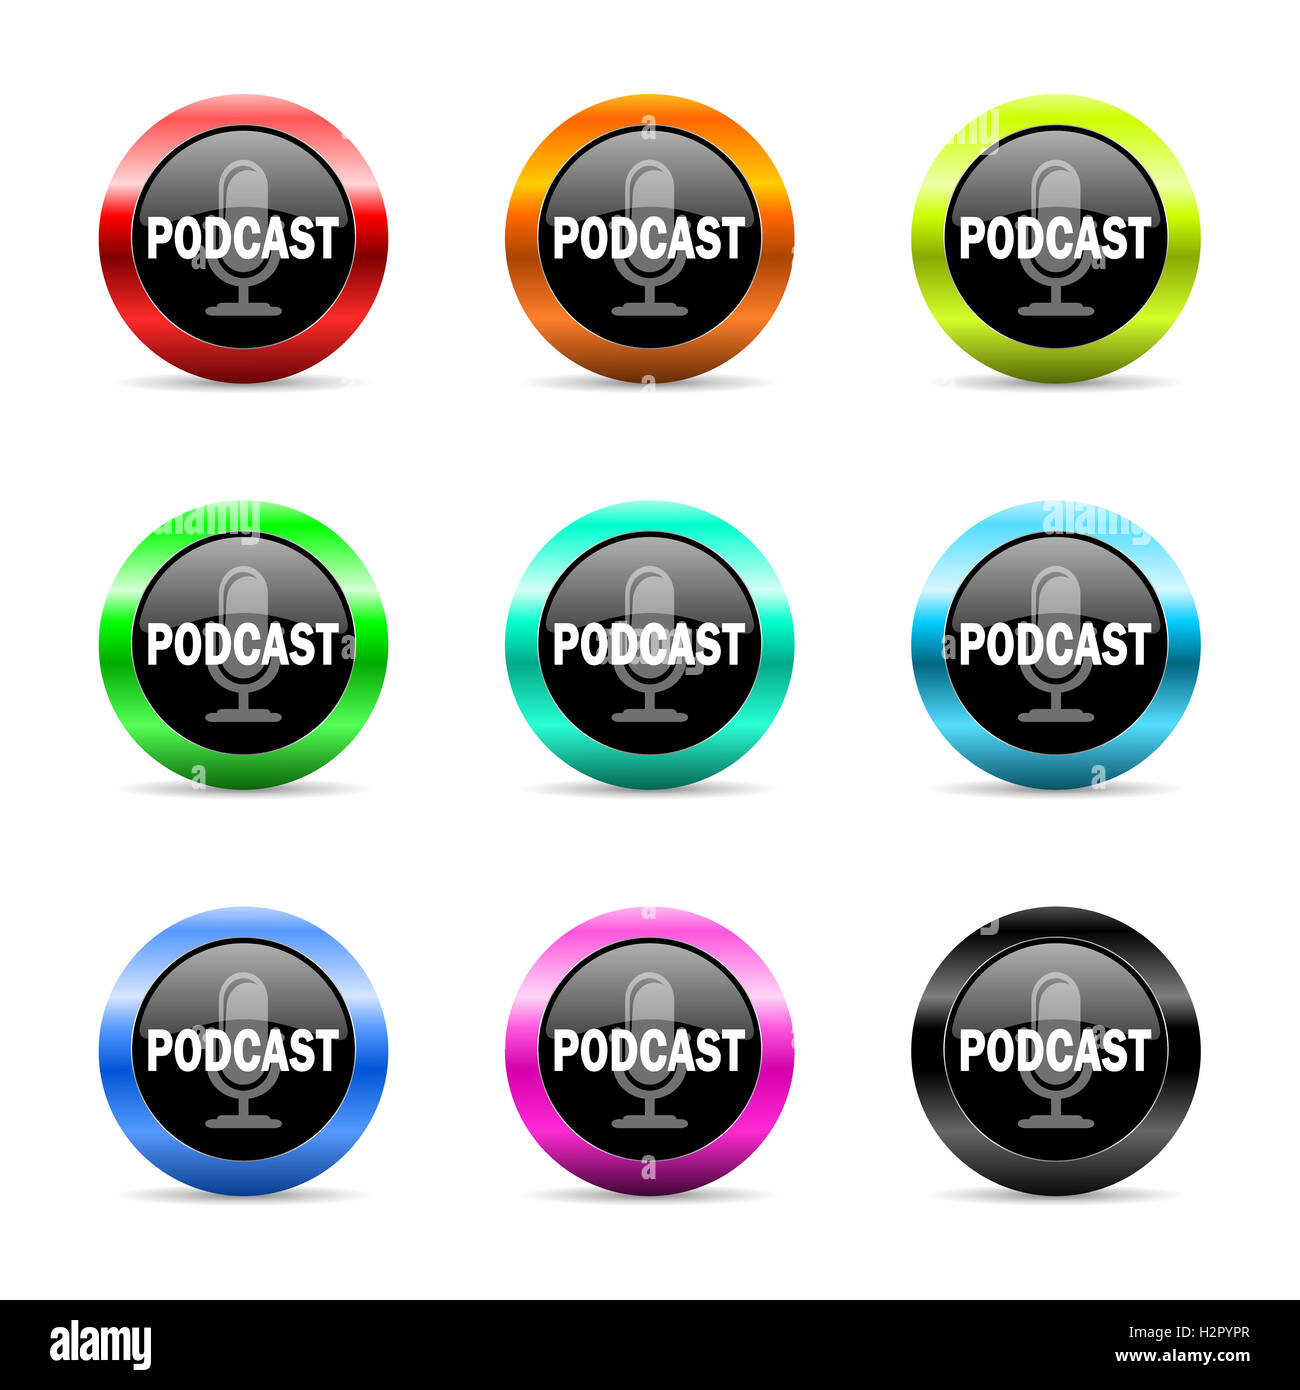 podcast web icons set Stock Photo